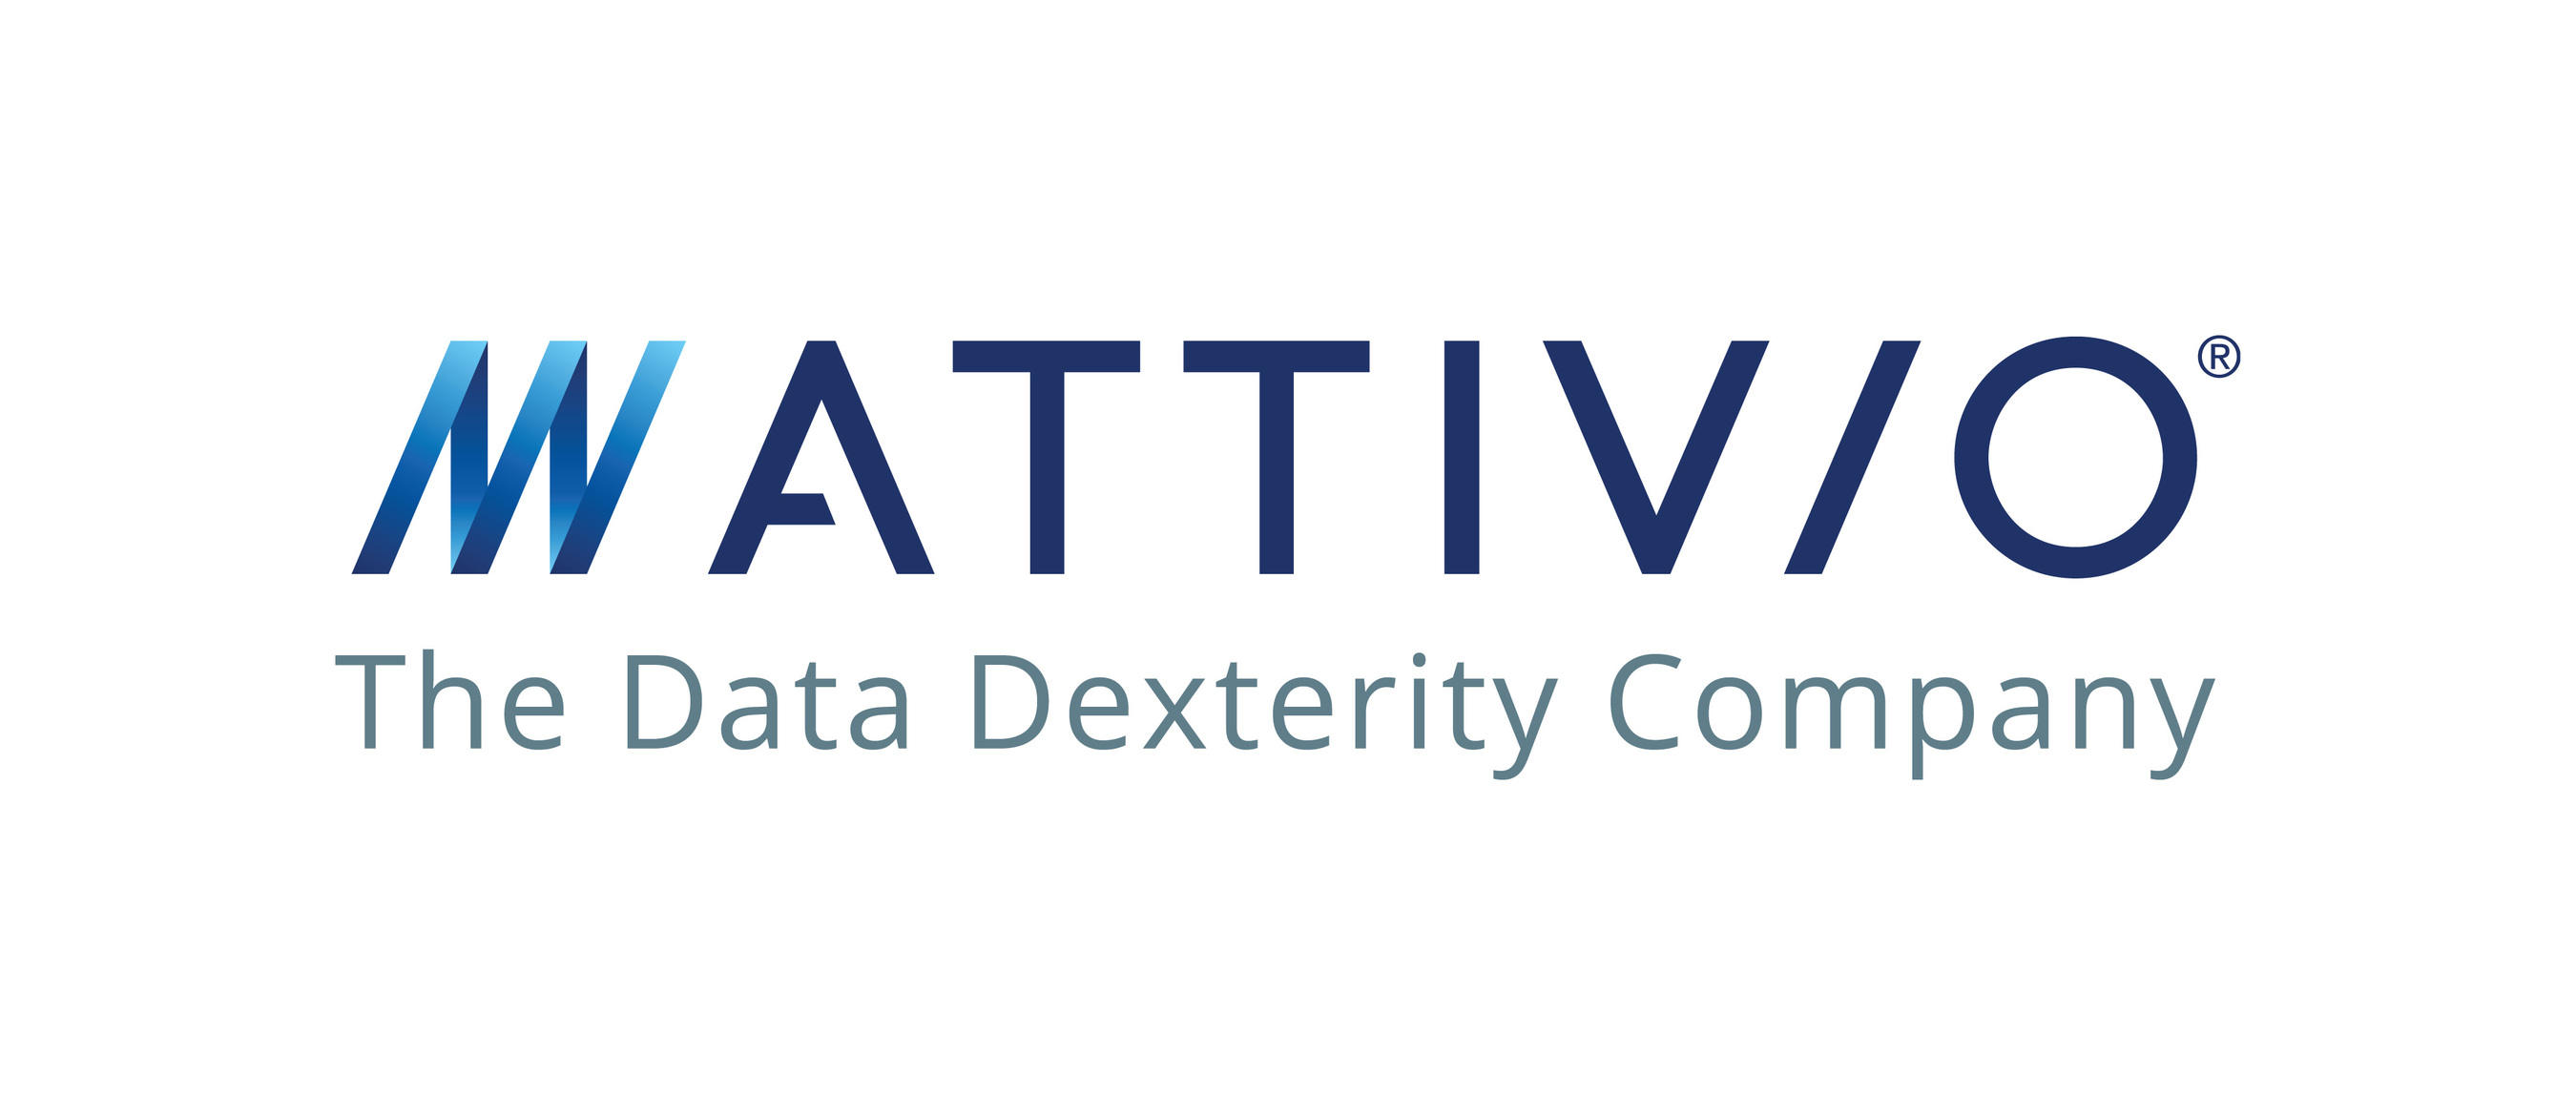 Attivio, The Data Dexterity Company